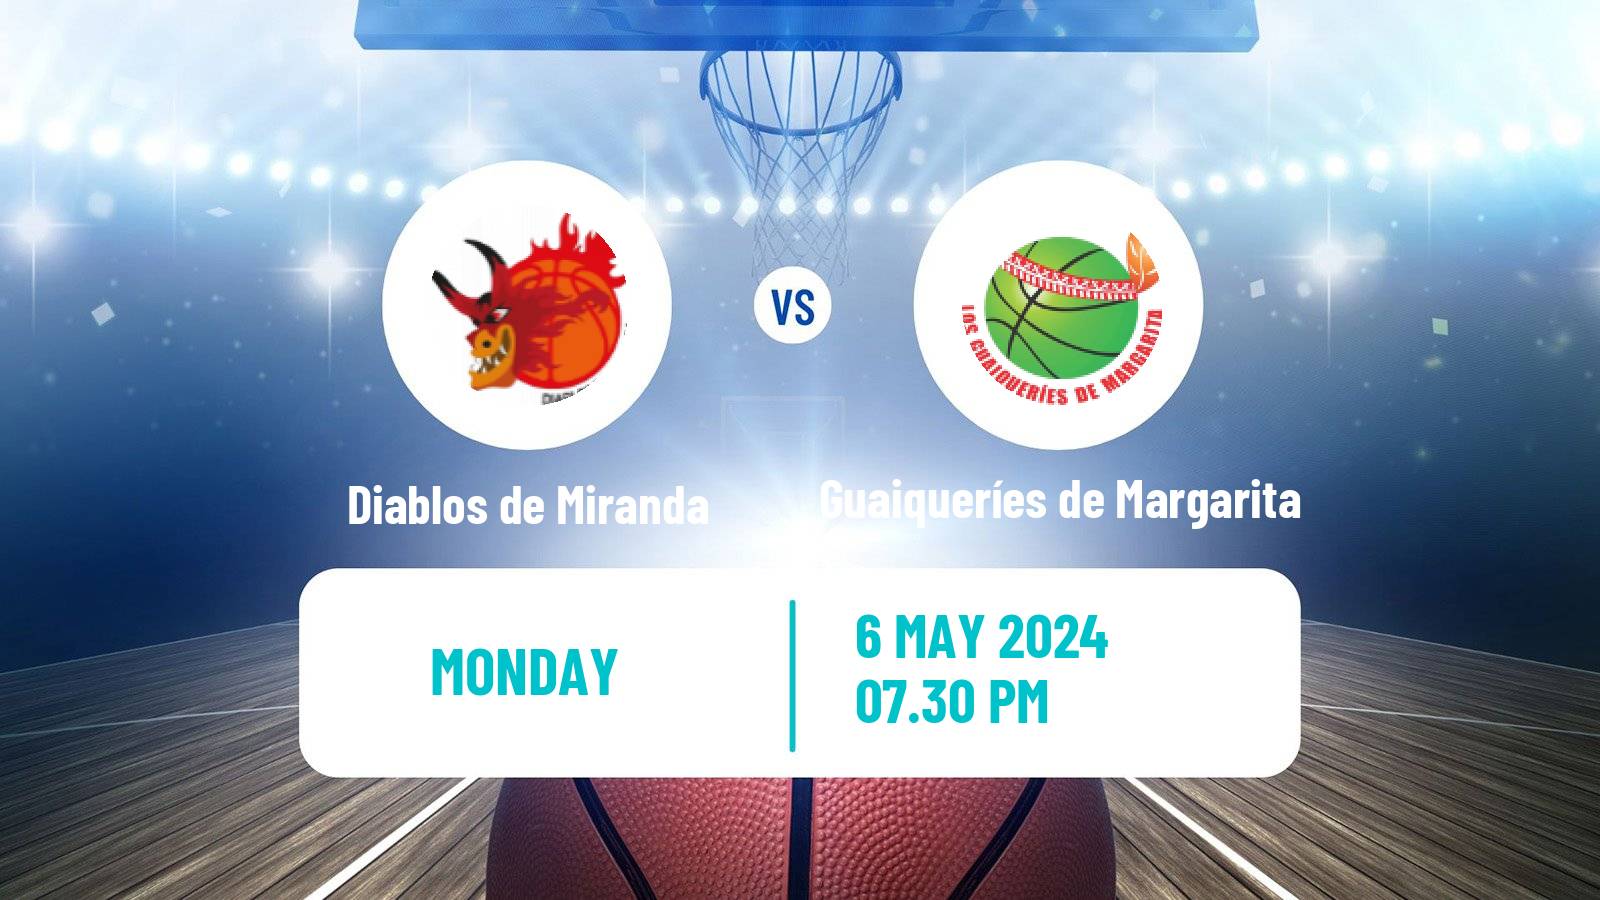 Basketball Venezuelan Superliga Basketball Diablos de Miranda - Guaiqueríes de Margarita